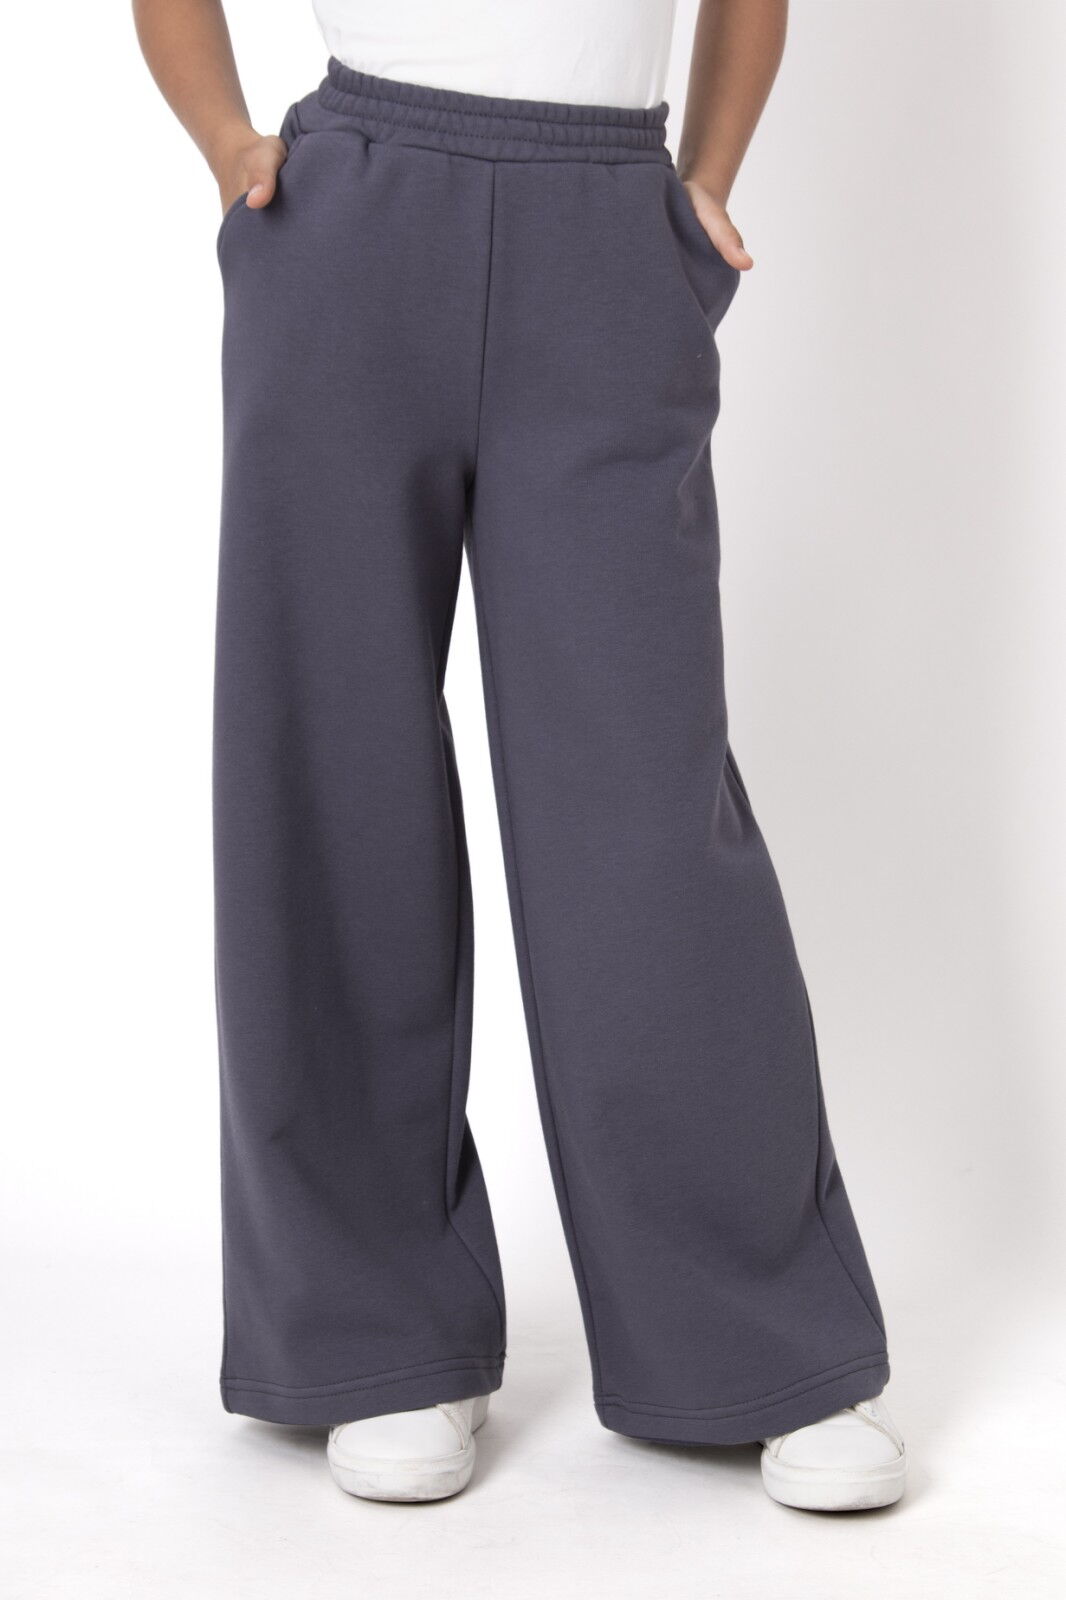 Трикотажные брюки-палаццо для девочки Mevis графит 4753-02 - цена